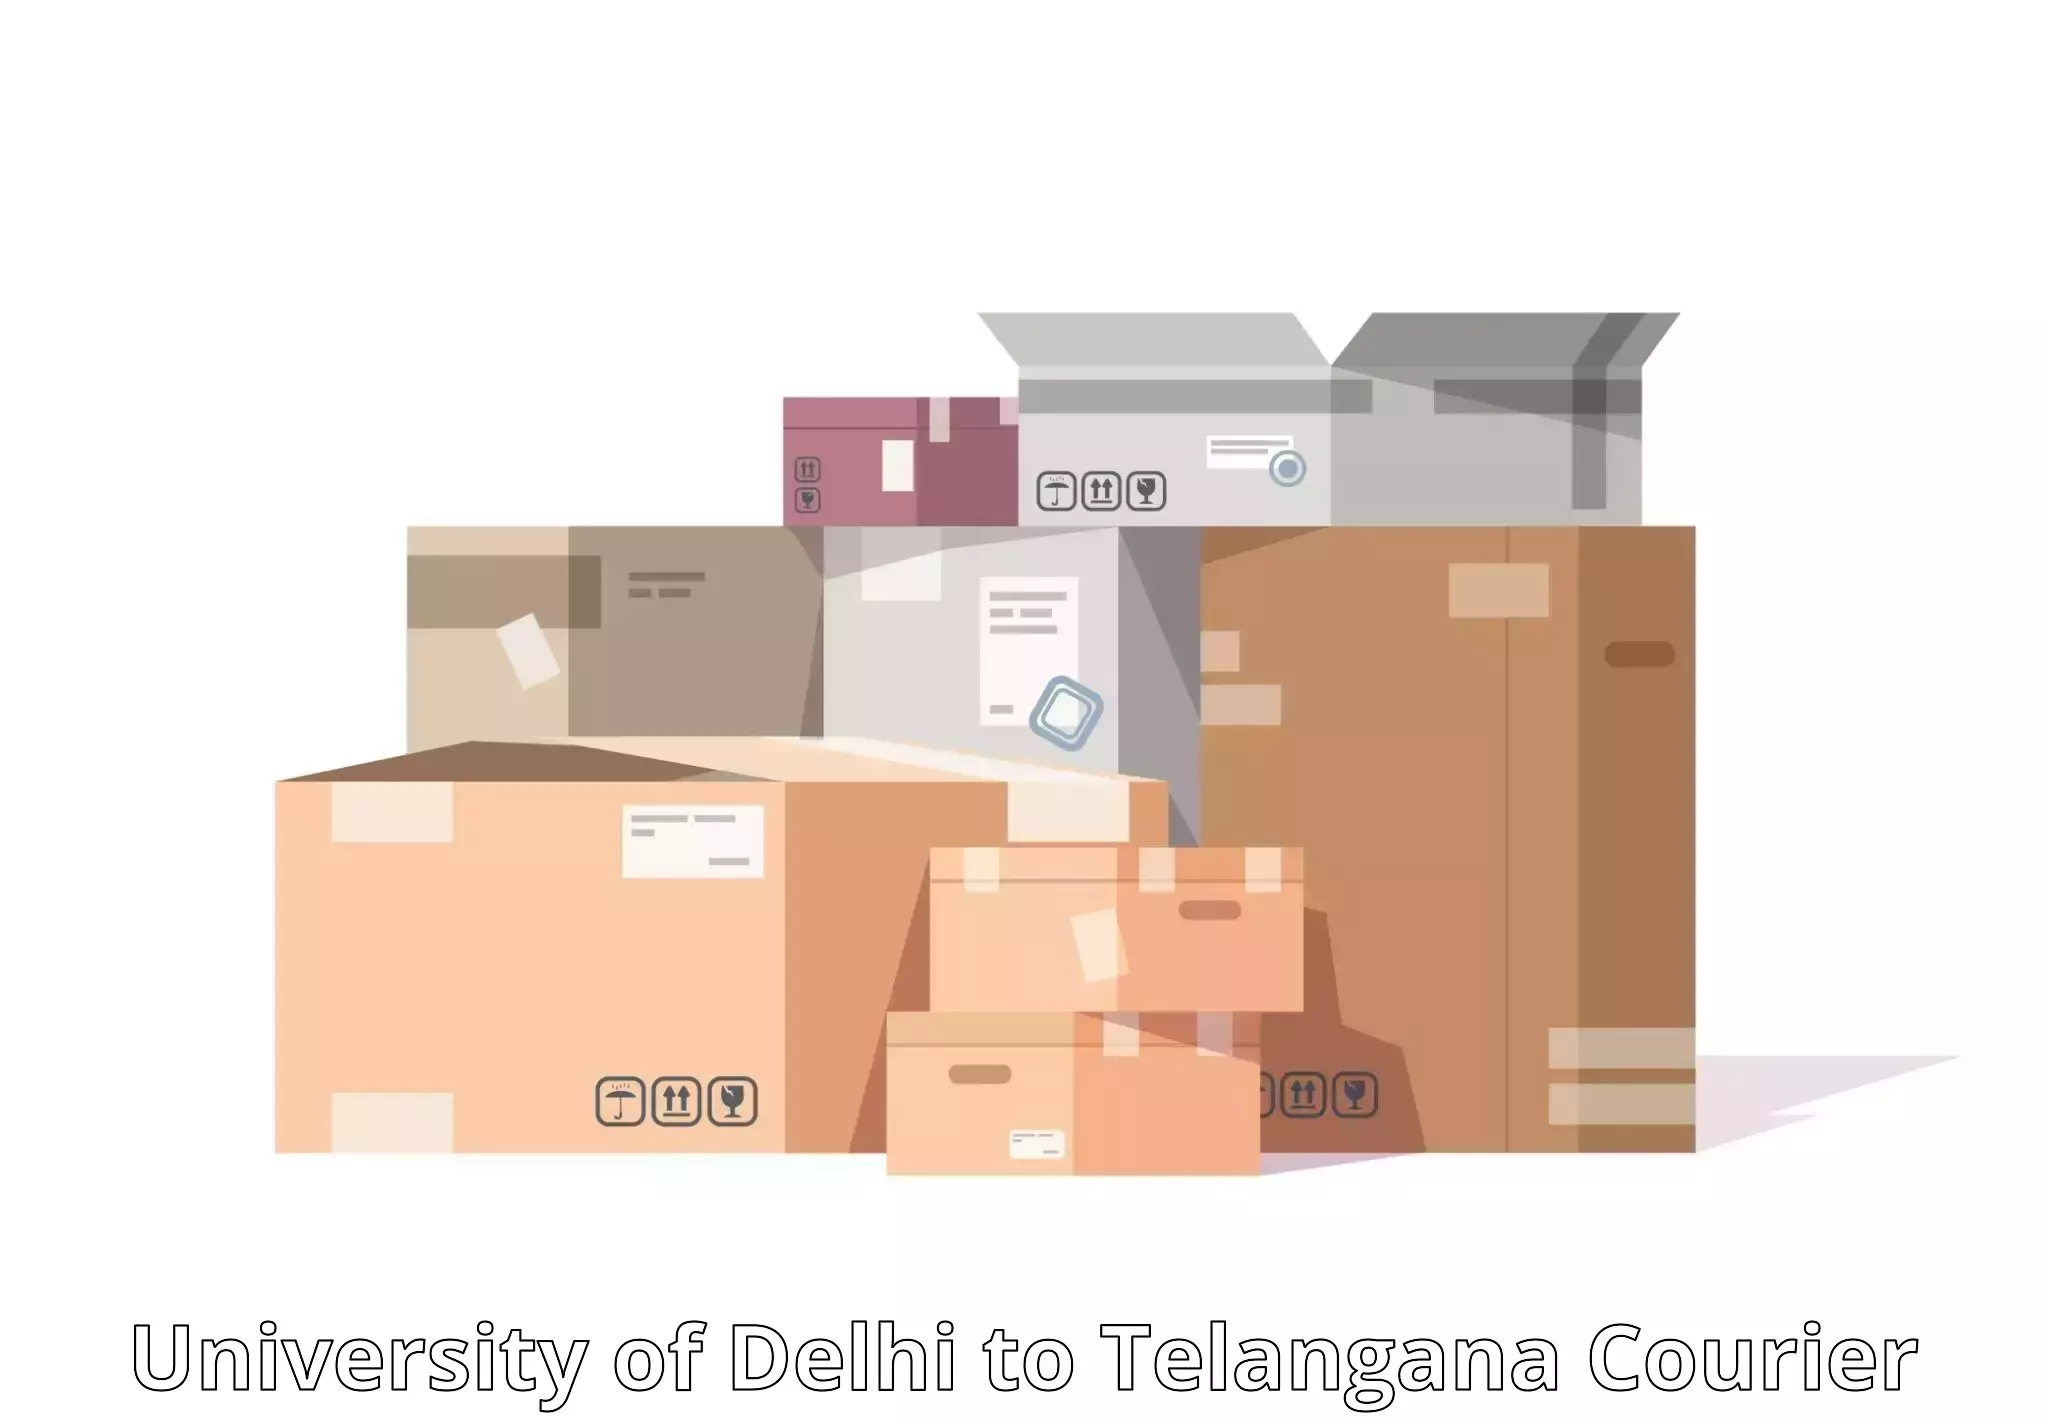 Door-to-door freight service in University of Delhi to Rudrangi